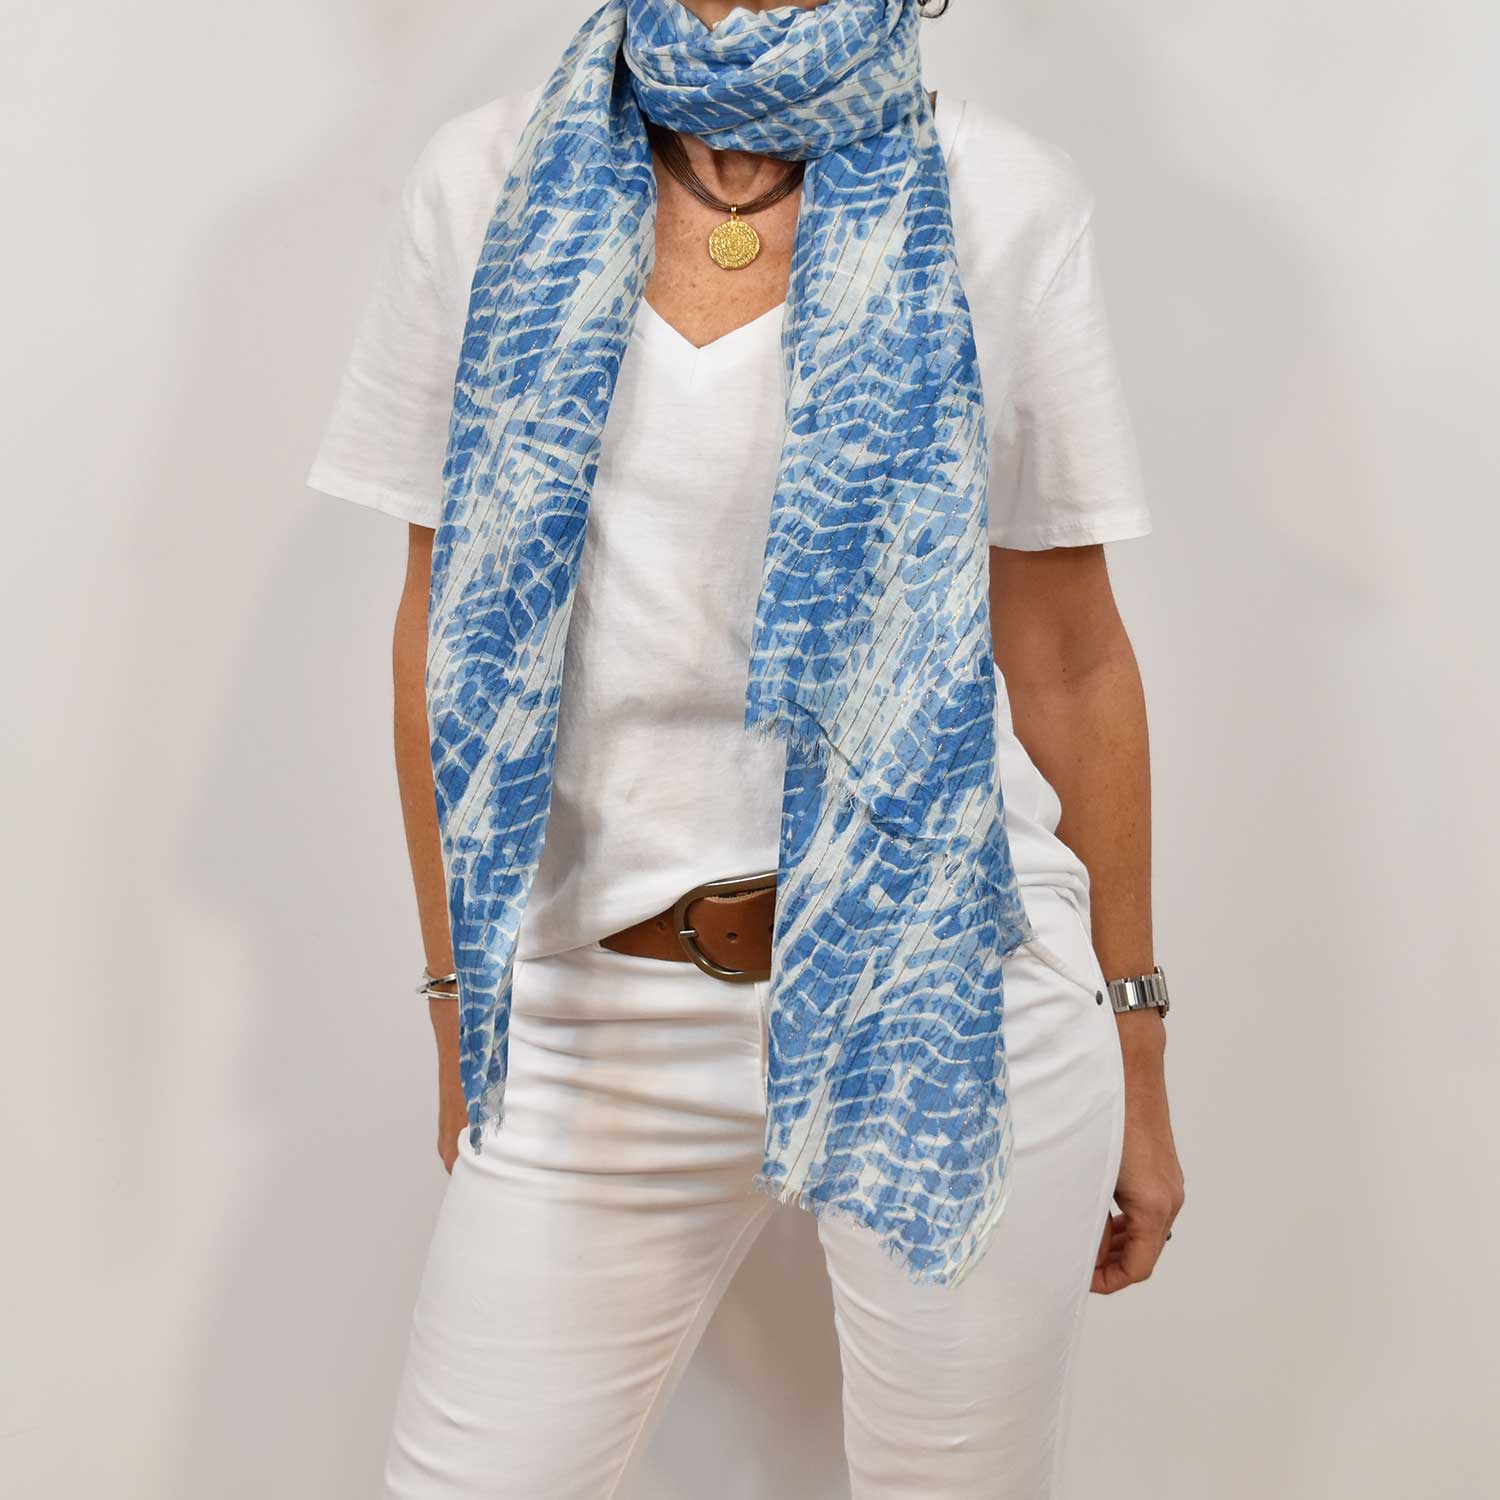 Blue shiny tie dye scarf